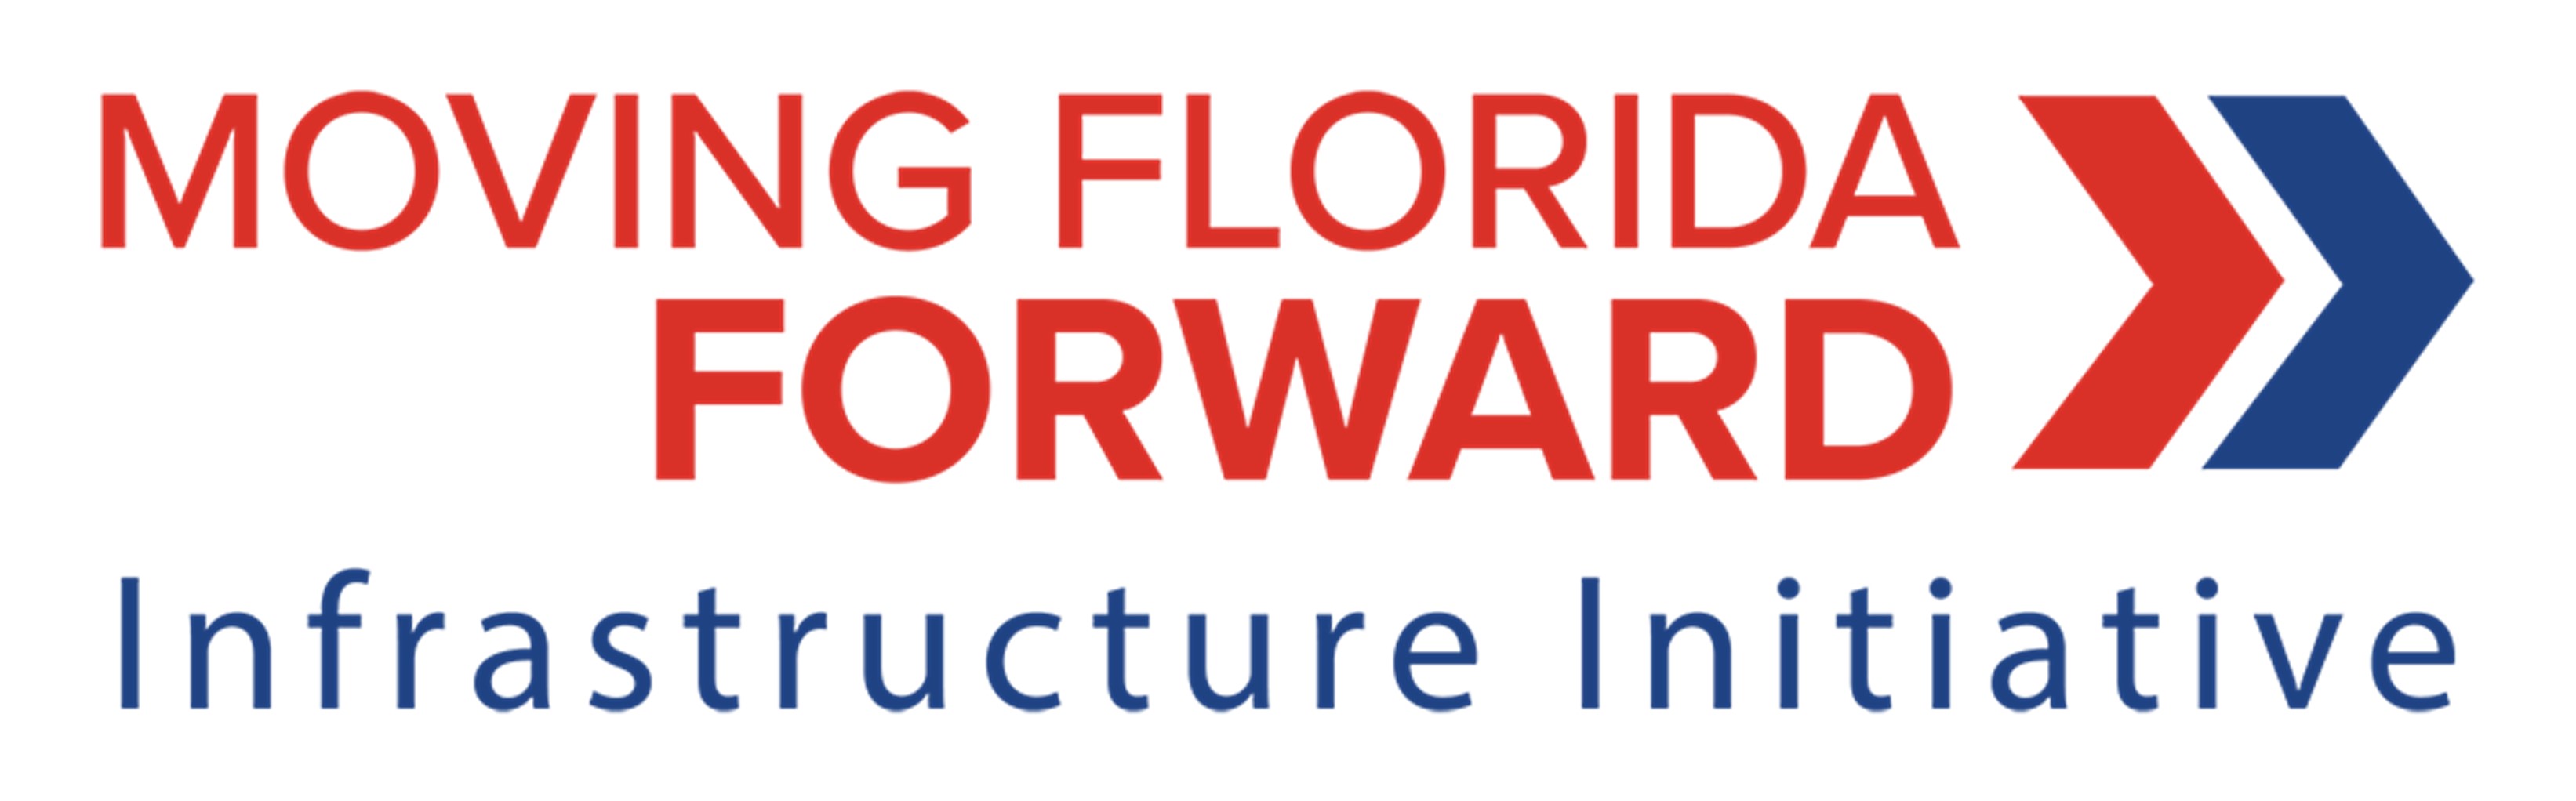 Moving Florida Forward